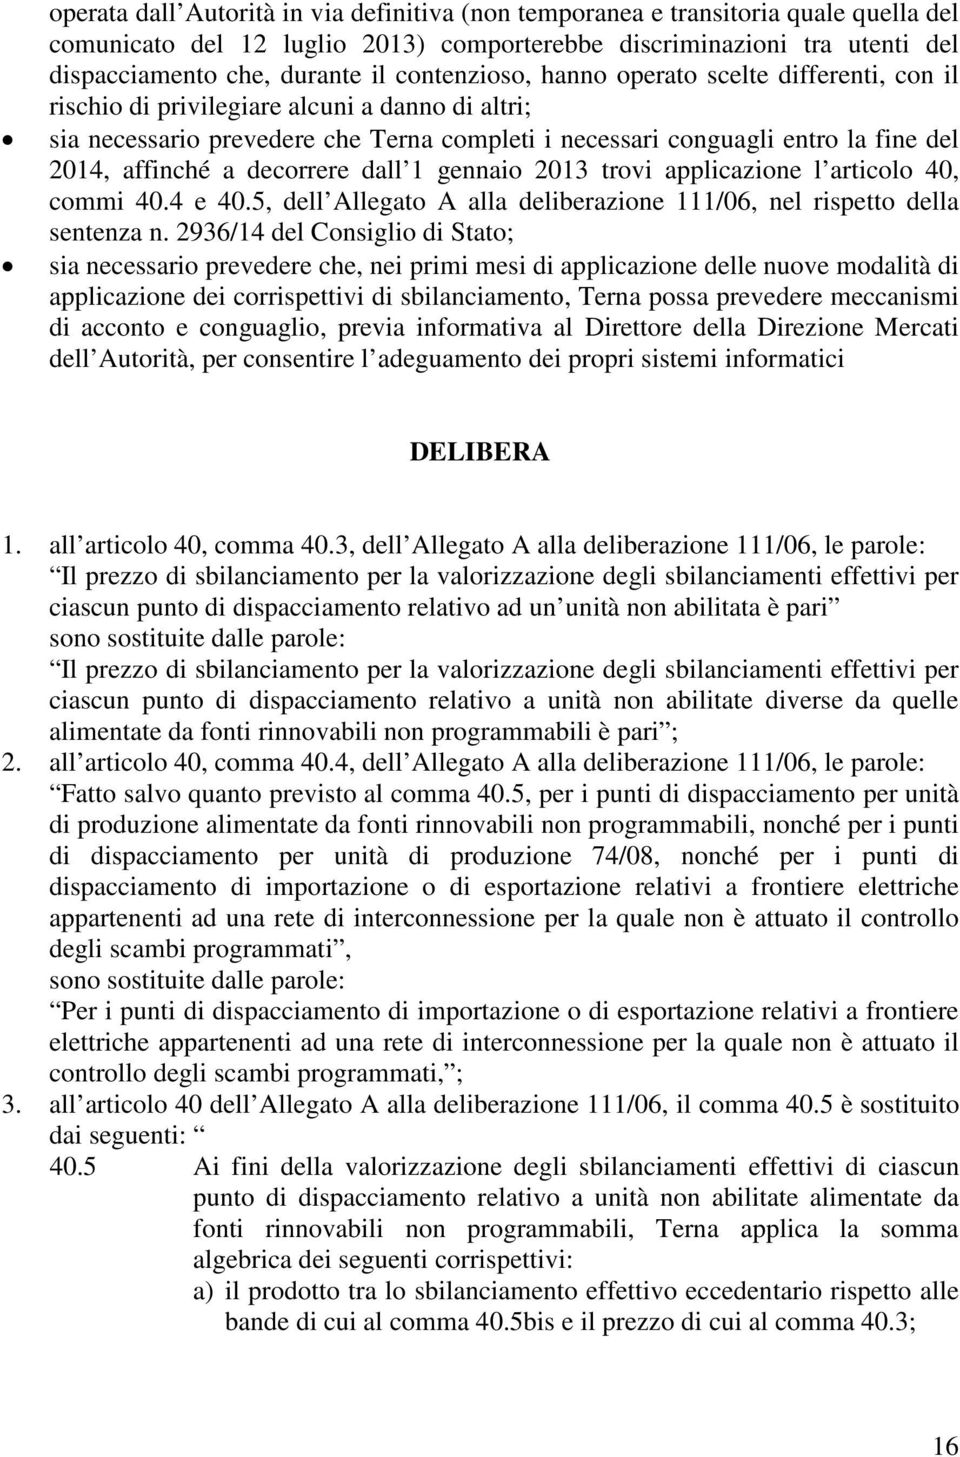 affinché a decorrere dall 1 gennaio 2013 trovi applicazione l articolo 40, commi 40.4 e 40.5, dell Allegato A alla deliberazione 111/06, nel rispetto della sentenza n.